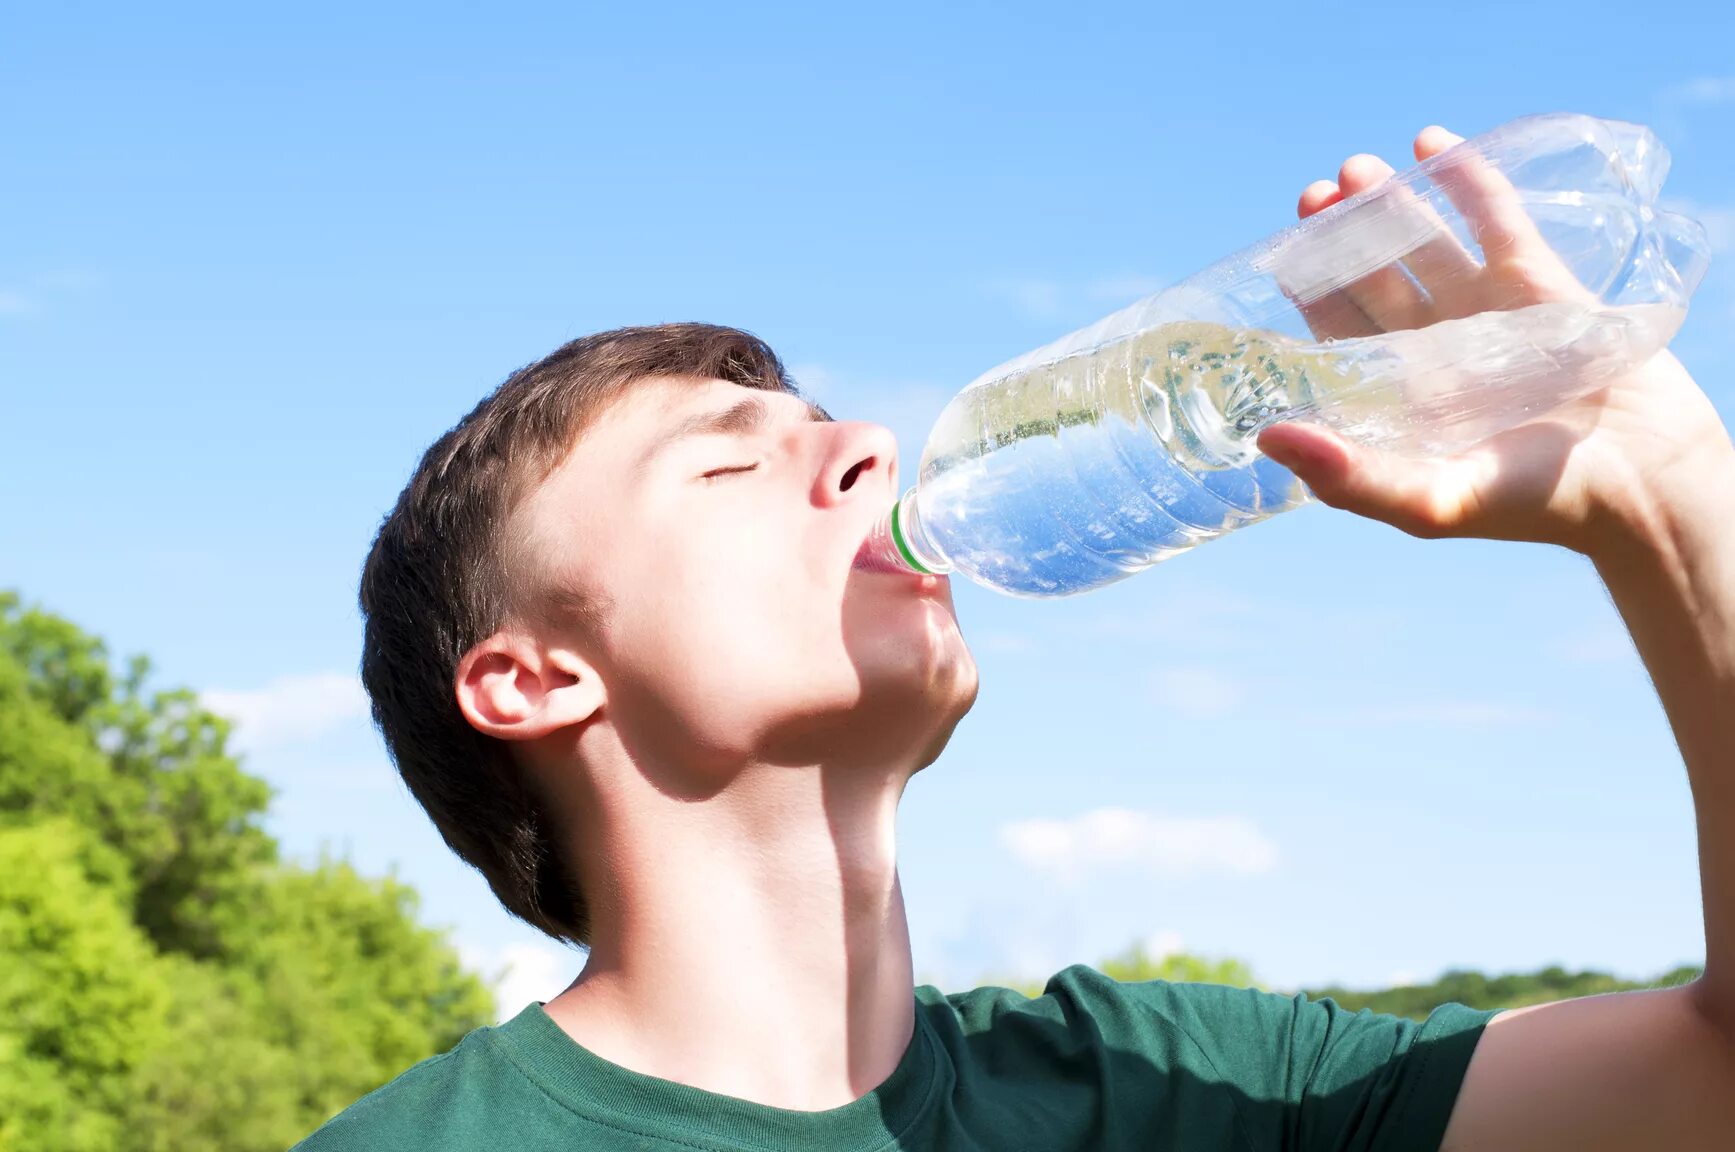 Игра пить воду. Пьет воду из бутылки. Парень с бутылкой воды. Парень пьет воду из бутылки. Пить воду.